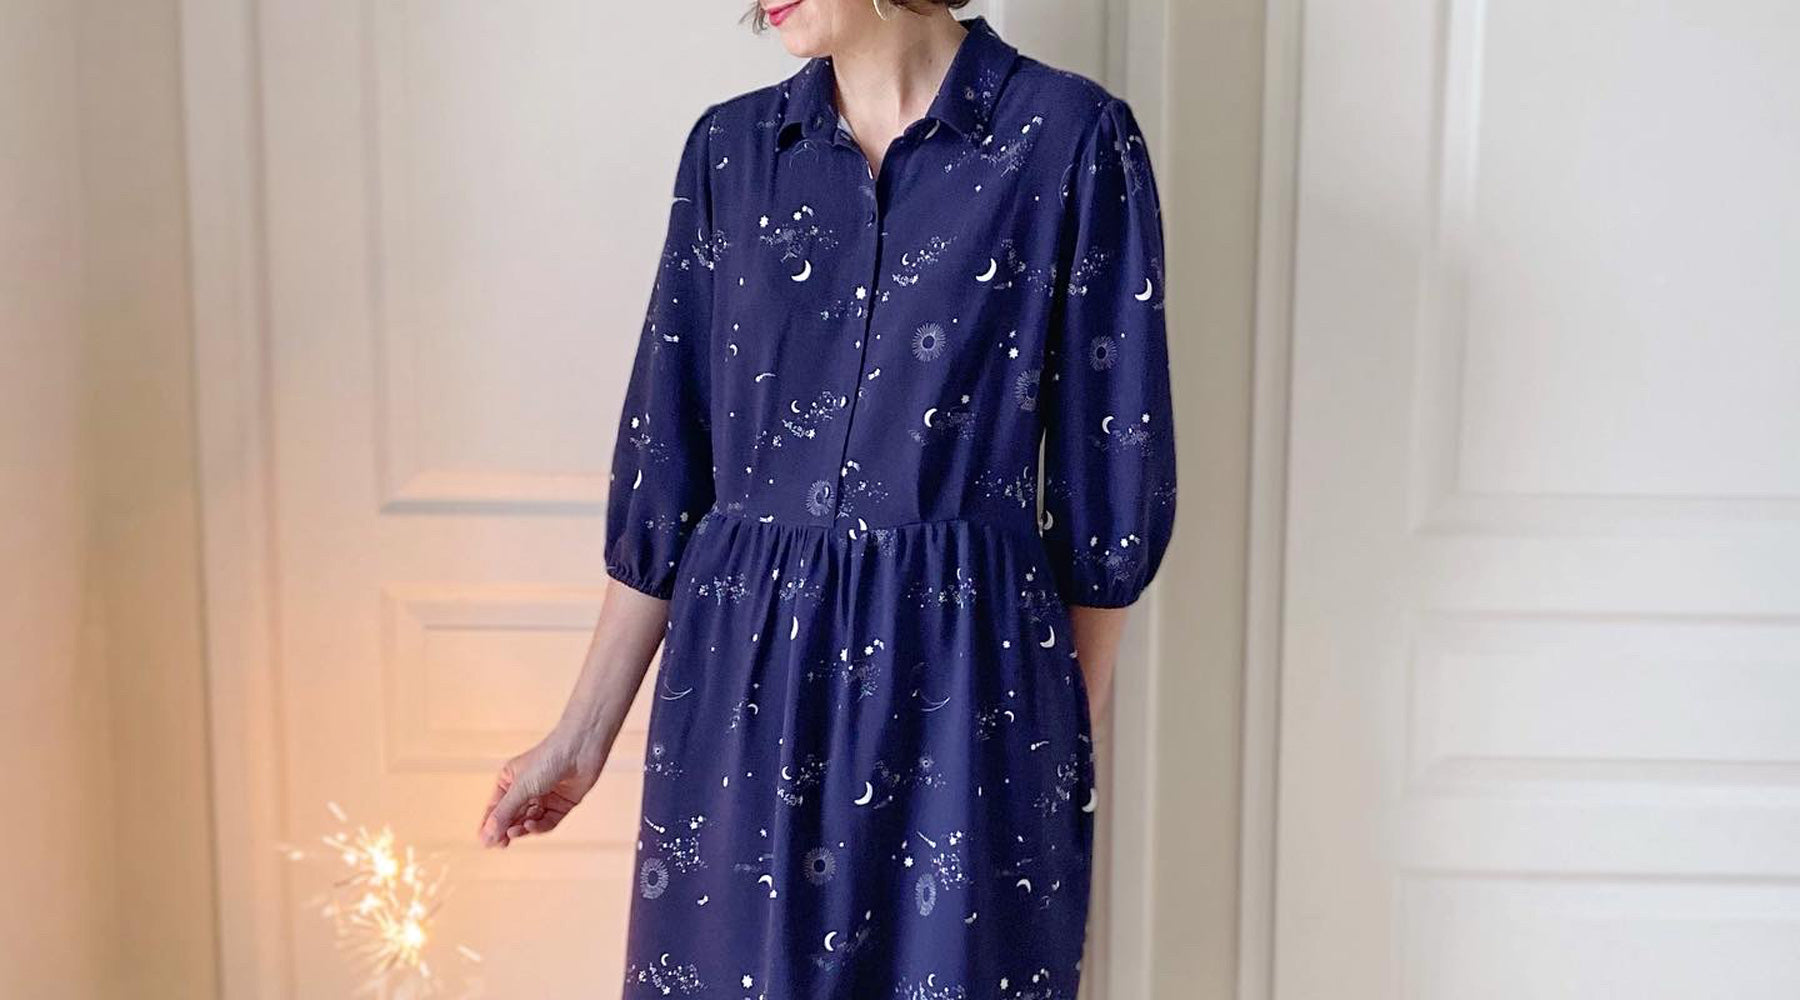 robe chemise tissu étoiles viscose lise tailor patrons à personnaliser atelier charlotte auzou robe de fête réveillon feu d'artifice paillettes bleu nuit